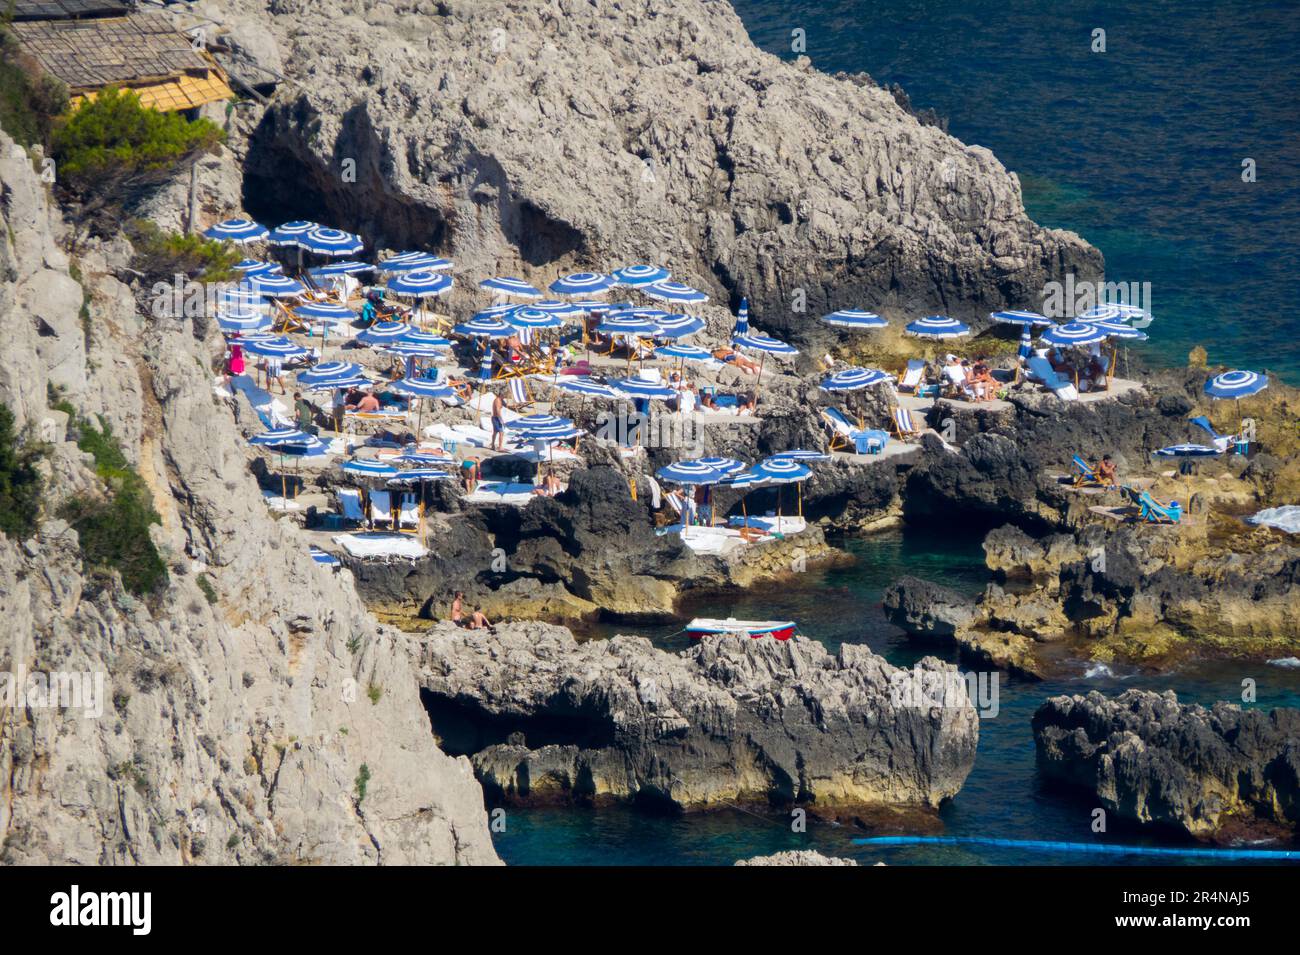 Playa rocosa entre acantilados, desde arriba, llena de sombrillas blancas y azules, en la isla de Capri Stock Photo